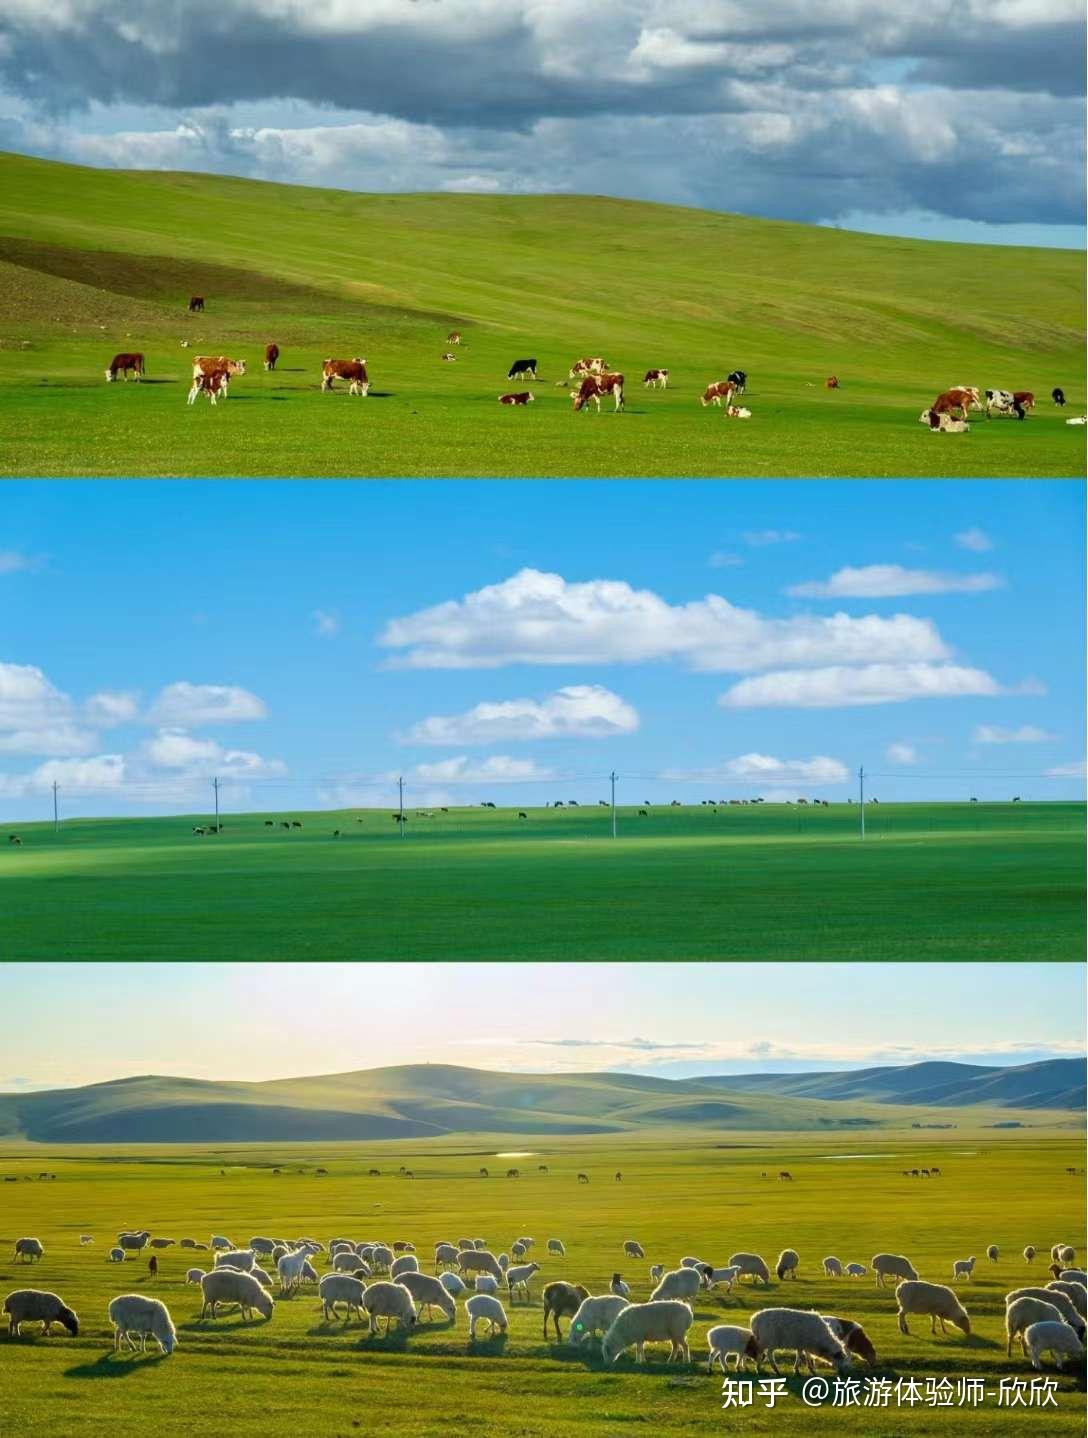 给大家整理了一份内蒙古大草原保姆级攻略,亲身经历总结,涵盖吃住行